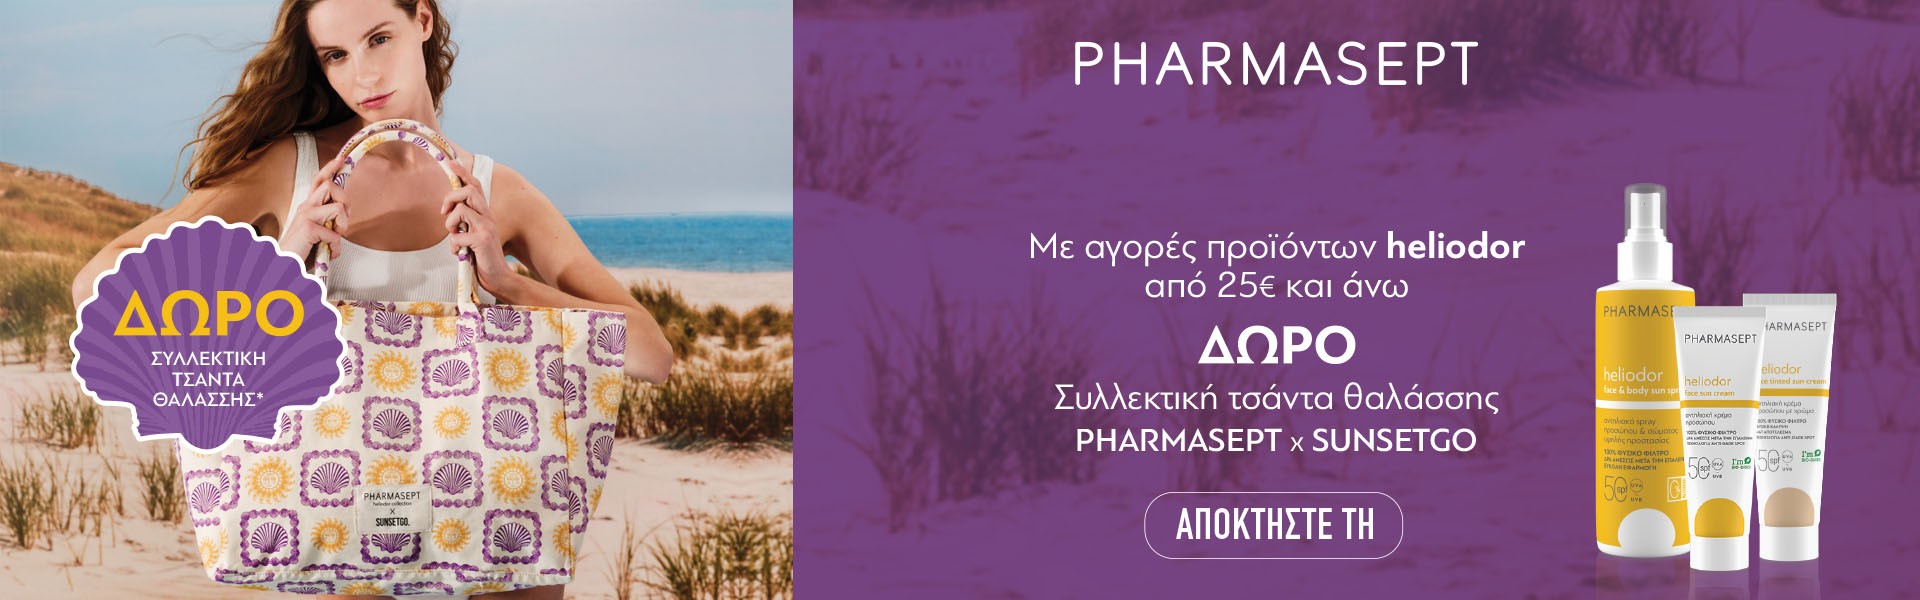 Pharmasept - Heliodor Τσάντα Θαλάσσης